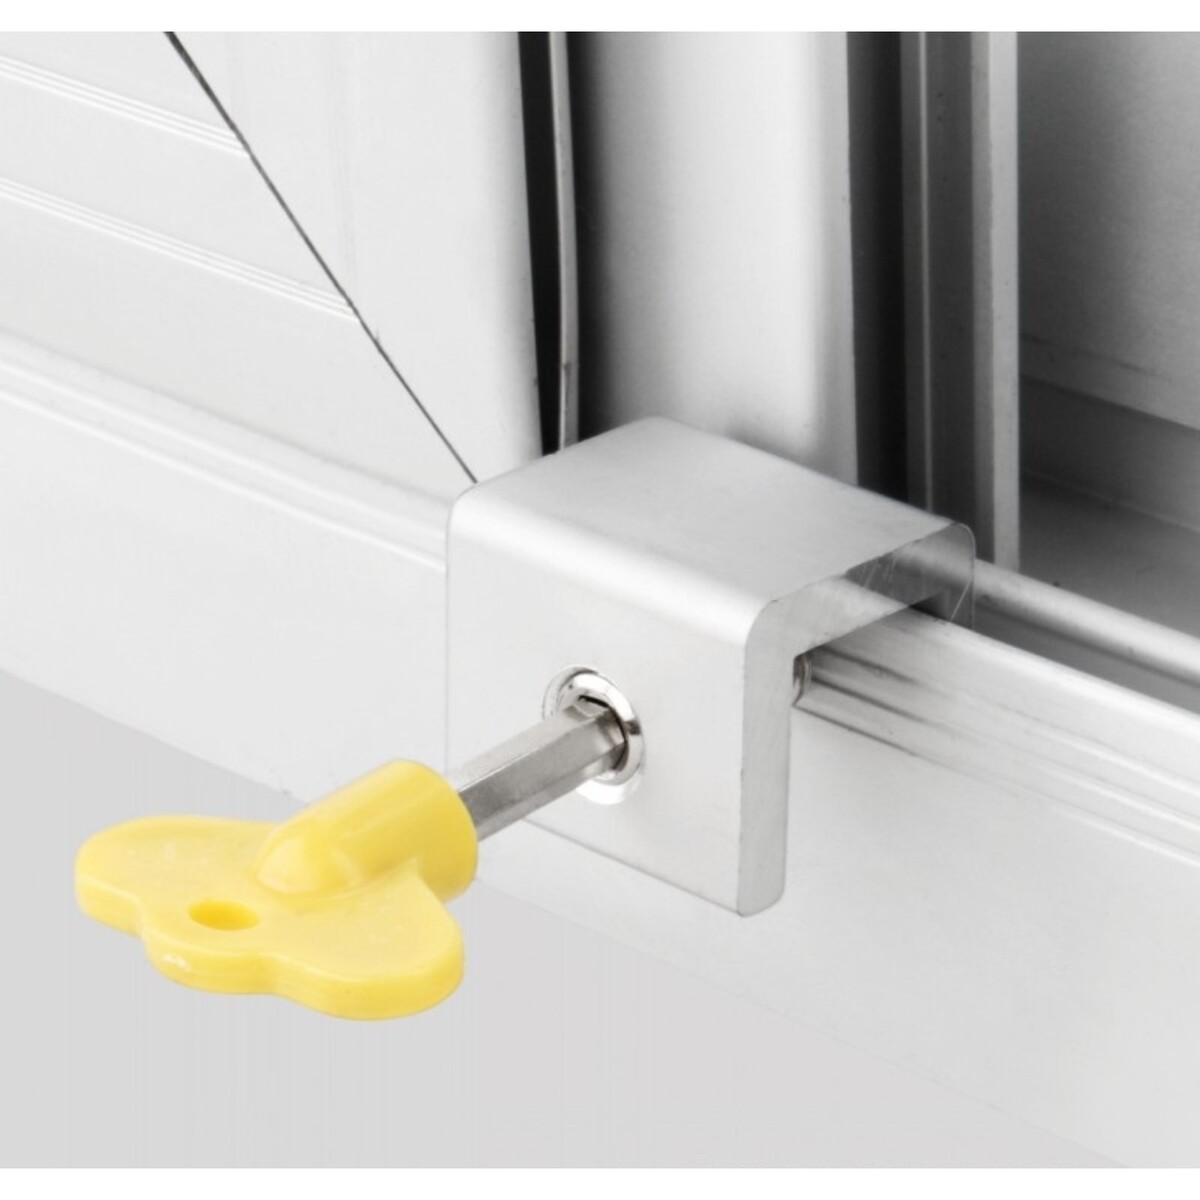 Блокиратор раздвижных дверей и окон, желтый, 16 мм защитный замок для раздвижных окон и дверей clippasafe cl83 2 new